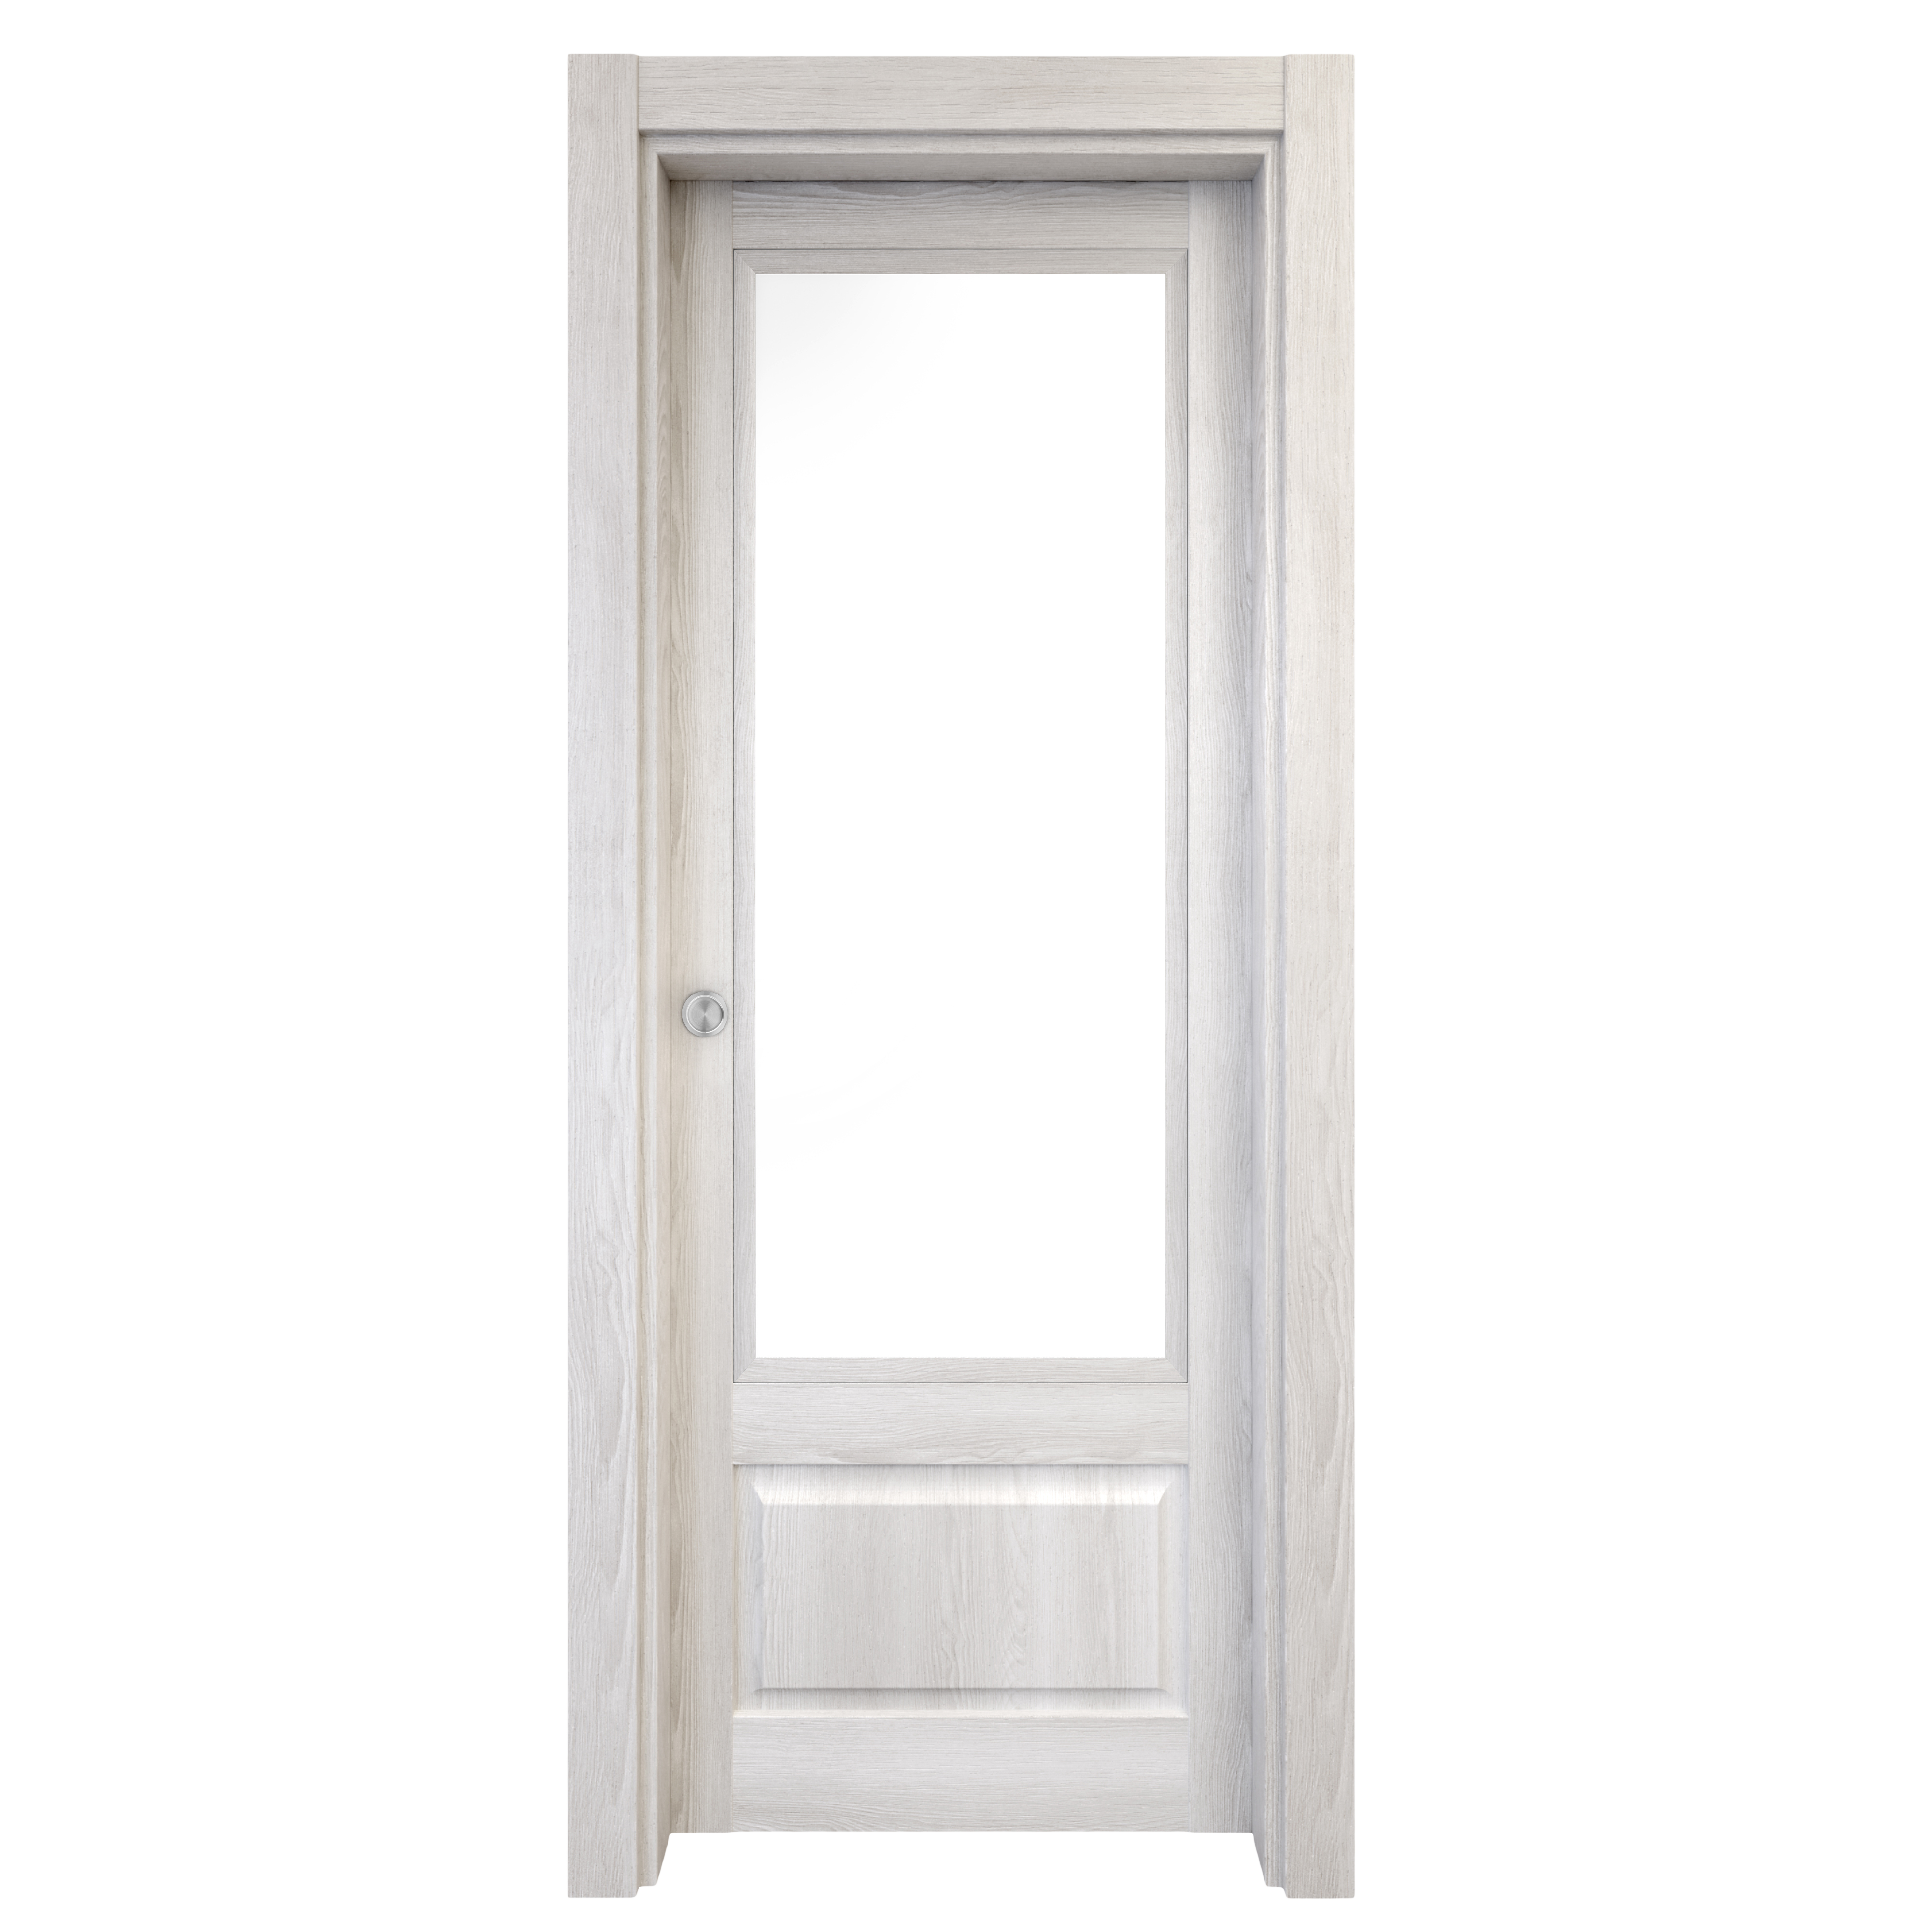 Puerta corredera sofia blanca line plus blanco con cristal de 72.5x203cm